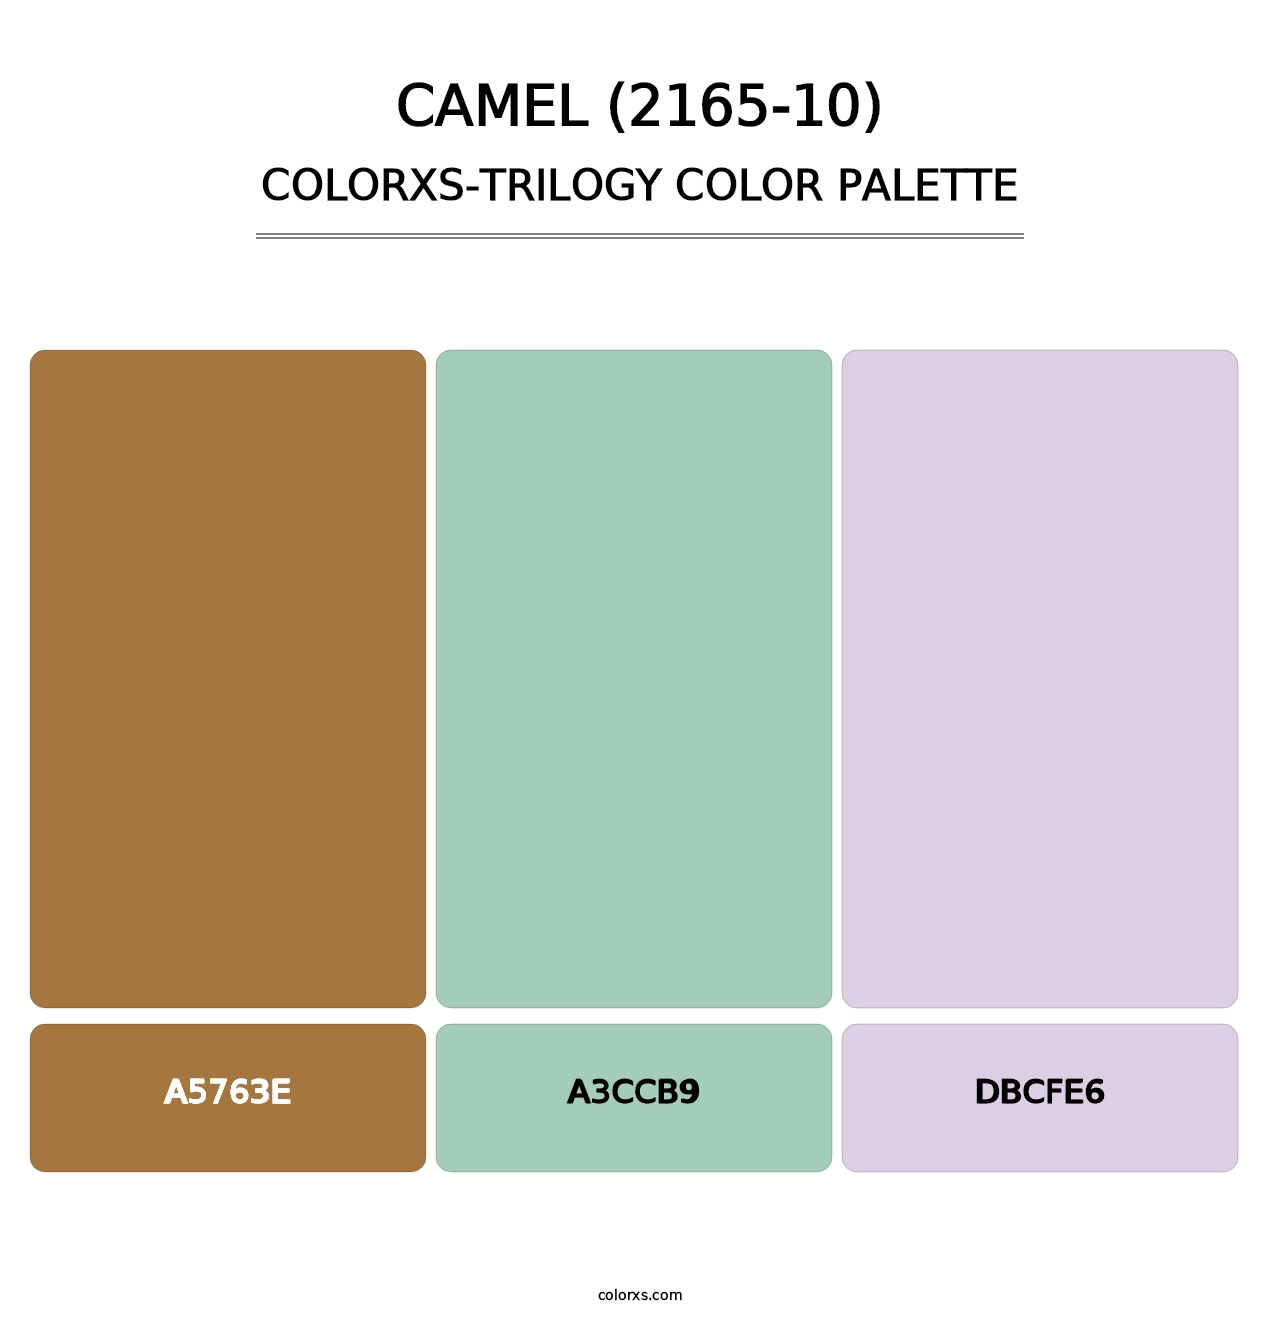 Camel (2165-10) - Colorxs Trilogy Palette